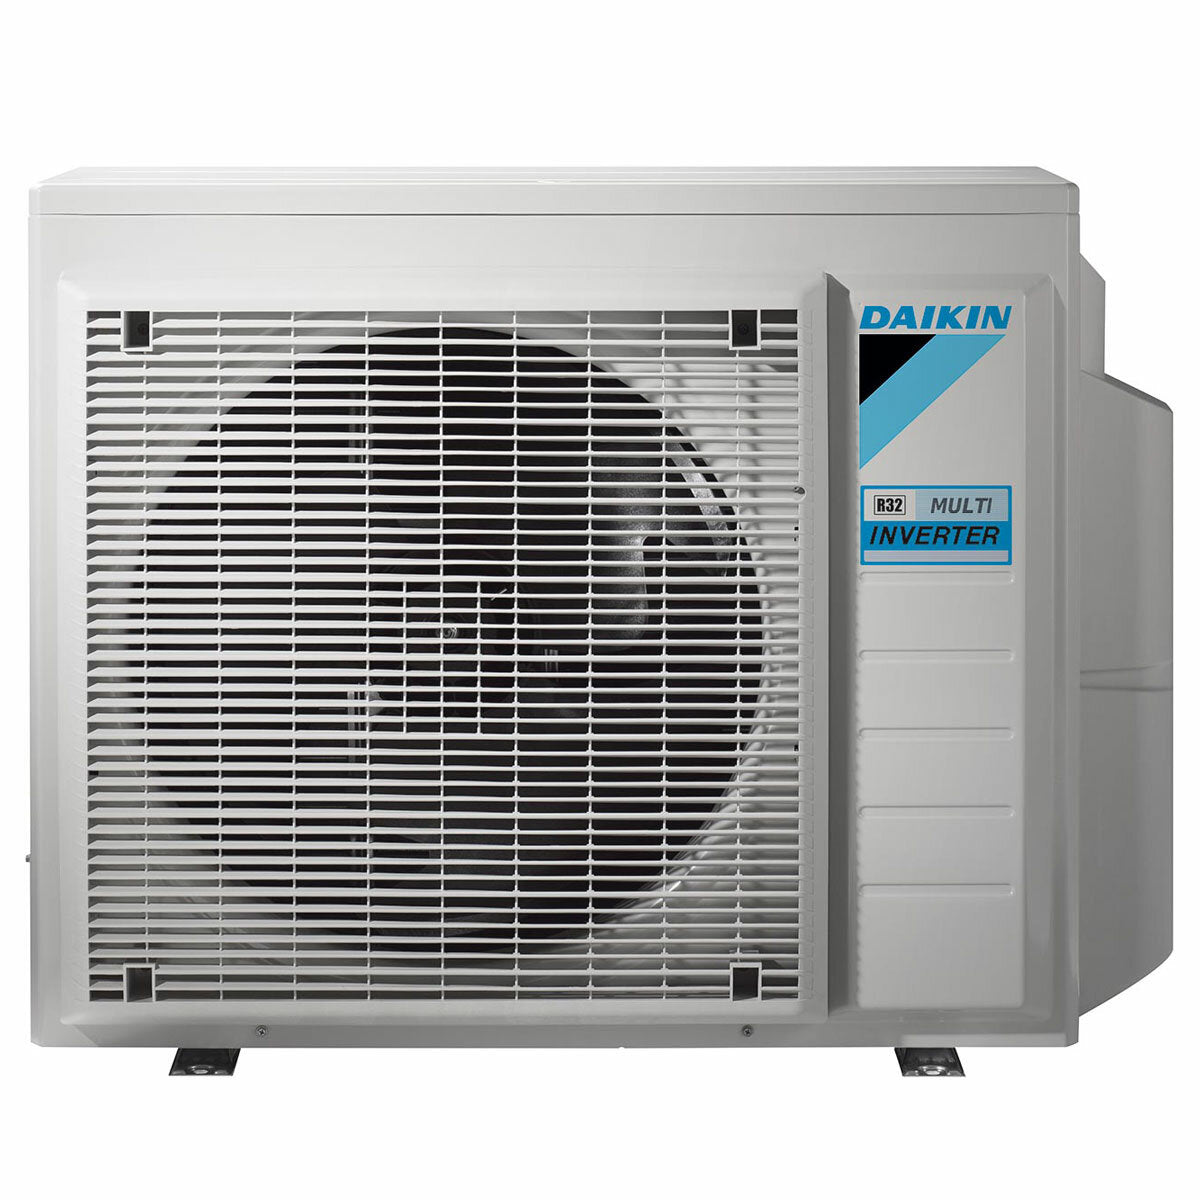 Daikin Emura air conditioner 3 split panels 7000 + 7000 + 9000 + 12000 BTU inverter A + wifi outdoor unit 6.8 kW Black